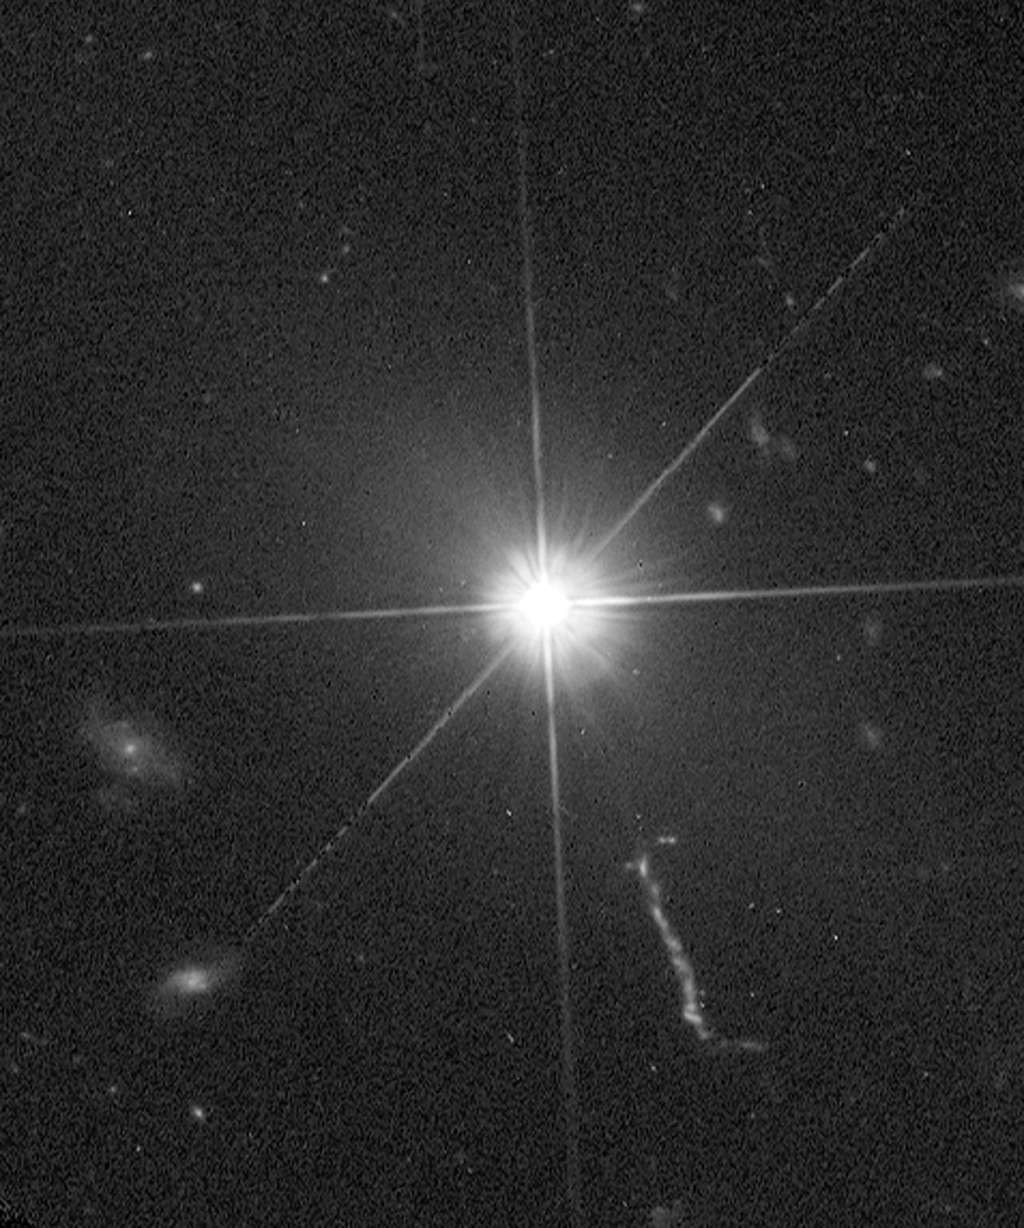 L'<em>Advanced Camera for Surveys</em> (ACS) du télescope spatial Hubble a fourni la vue la plus claire à ce jour en lumière visible du quasar 3C 273. Son jet est bien visible en bas à droite. Les structures radiales sont, quant à elles, un effet d'optique de la nature ondulatoire de la lumière dans un télescope. © Nasa/ESA et J. Bahcall (IAS)